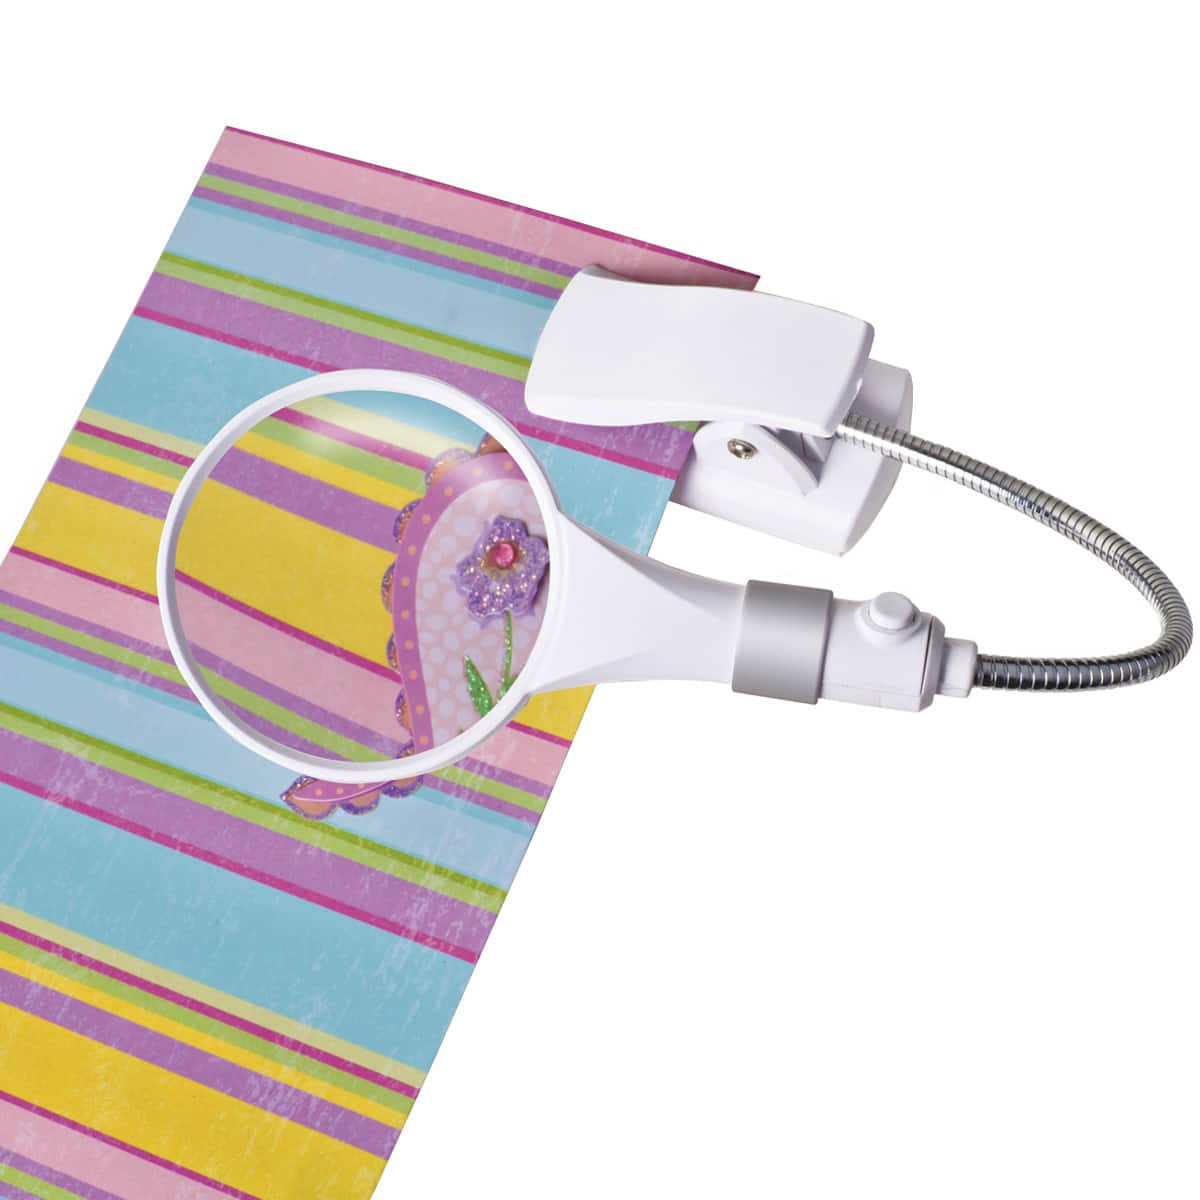 OttLite&#xAE; LED Clip &#x26; Freestanding Magnifier Lamp